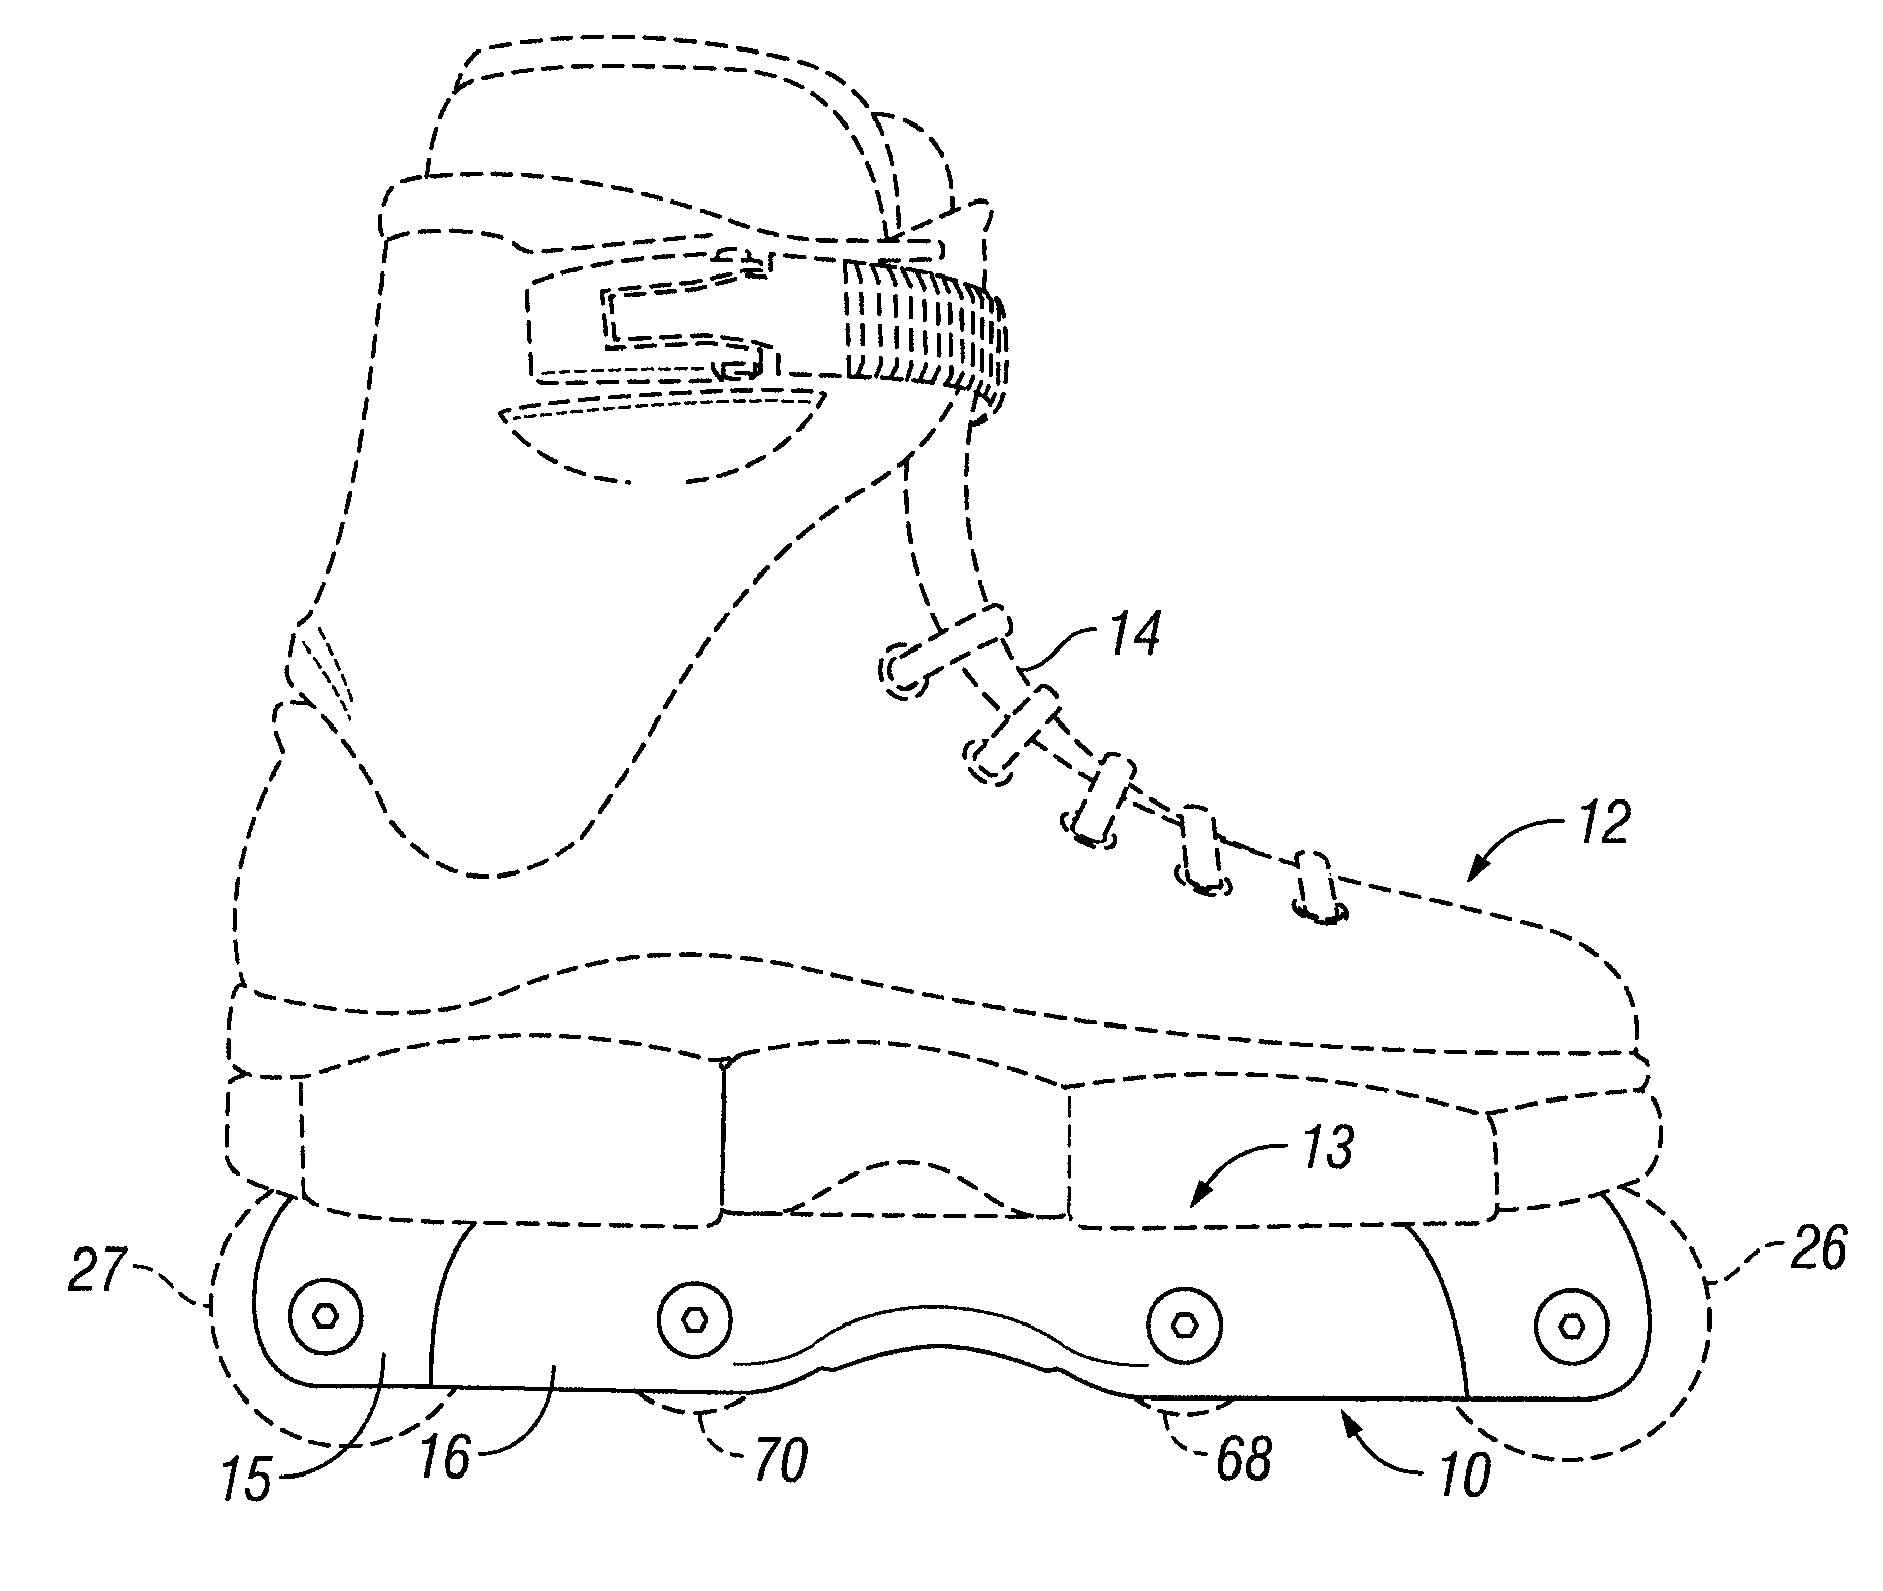 Frame assembly for in-line skate